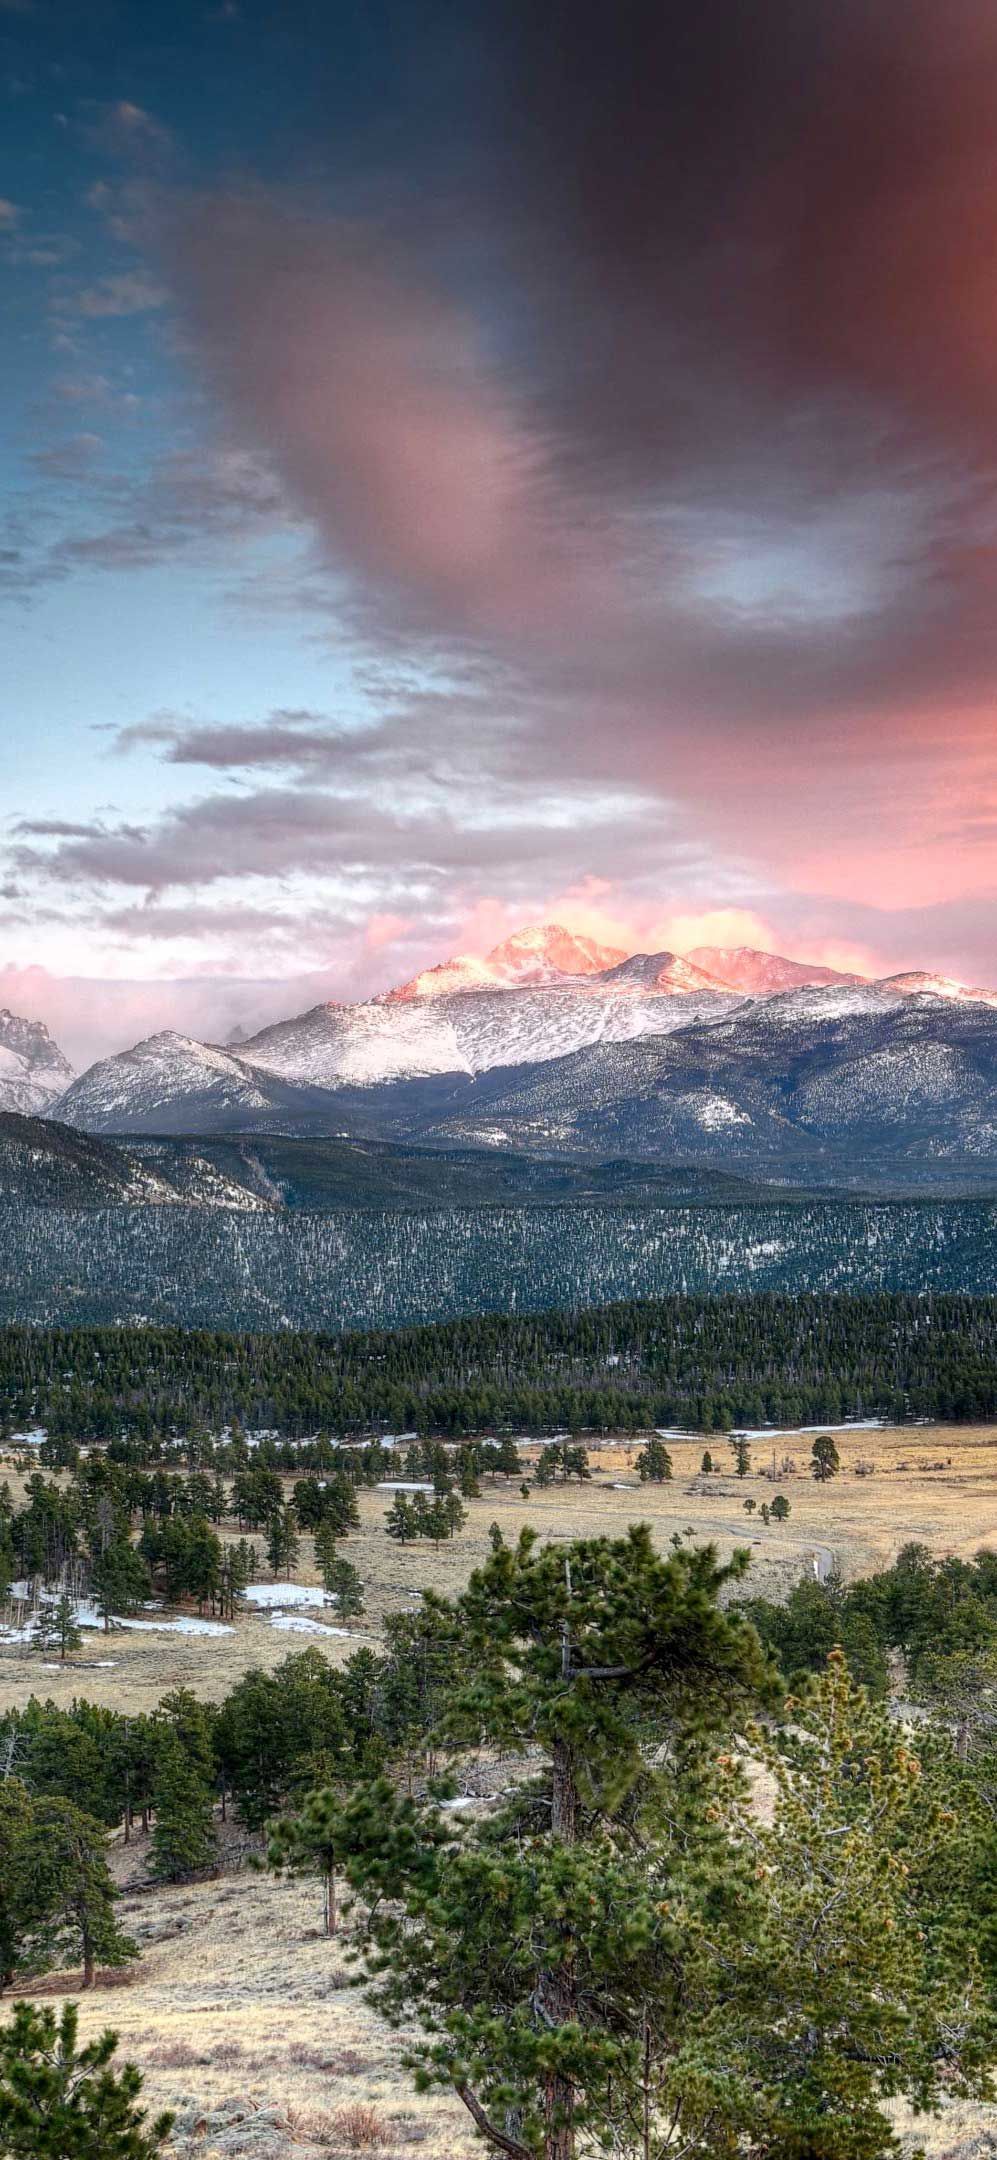 The Peaks Of Colorado Garden Of The Gods Desktop Wallpaper Hd   Wallpapers13com